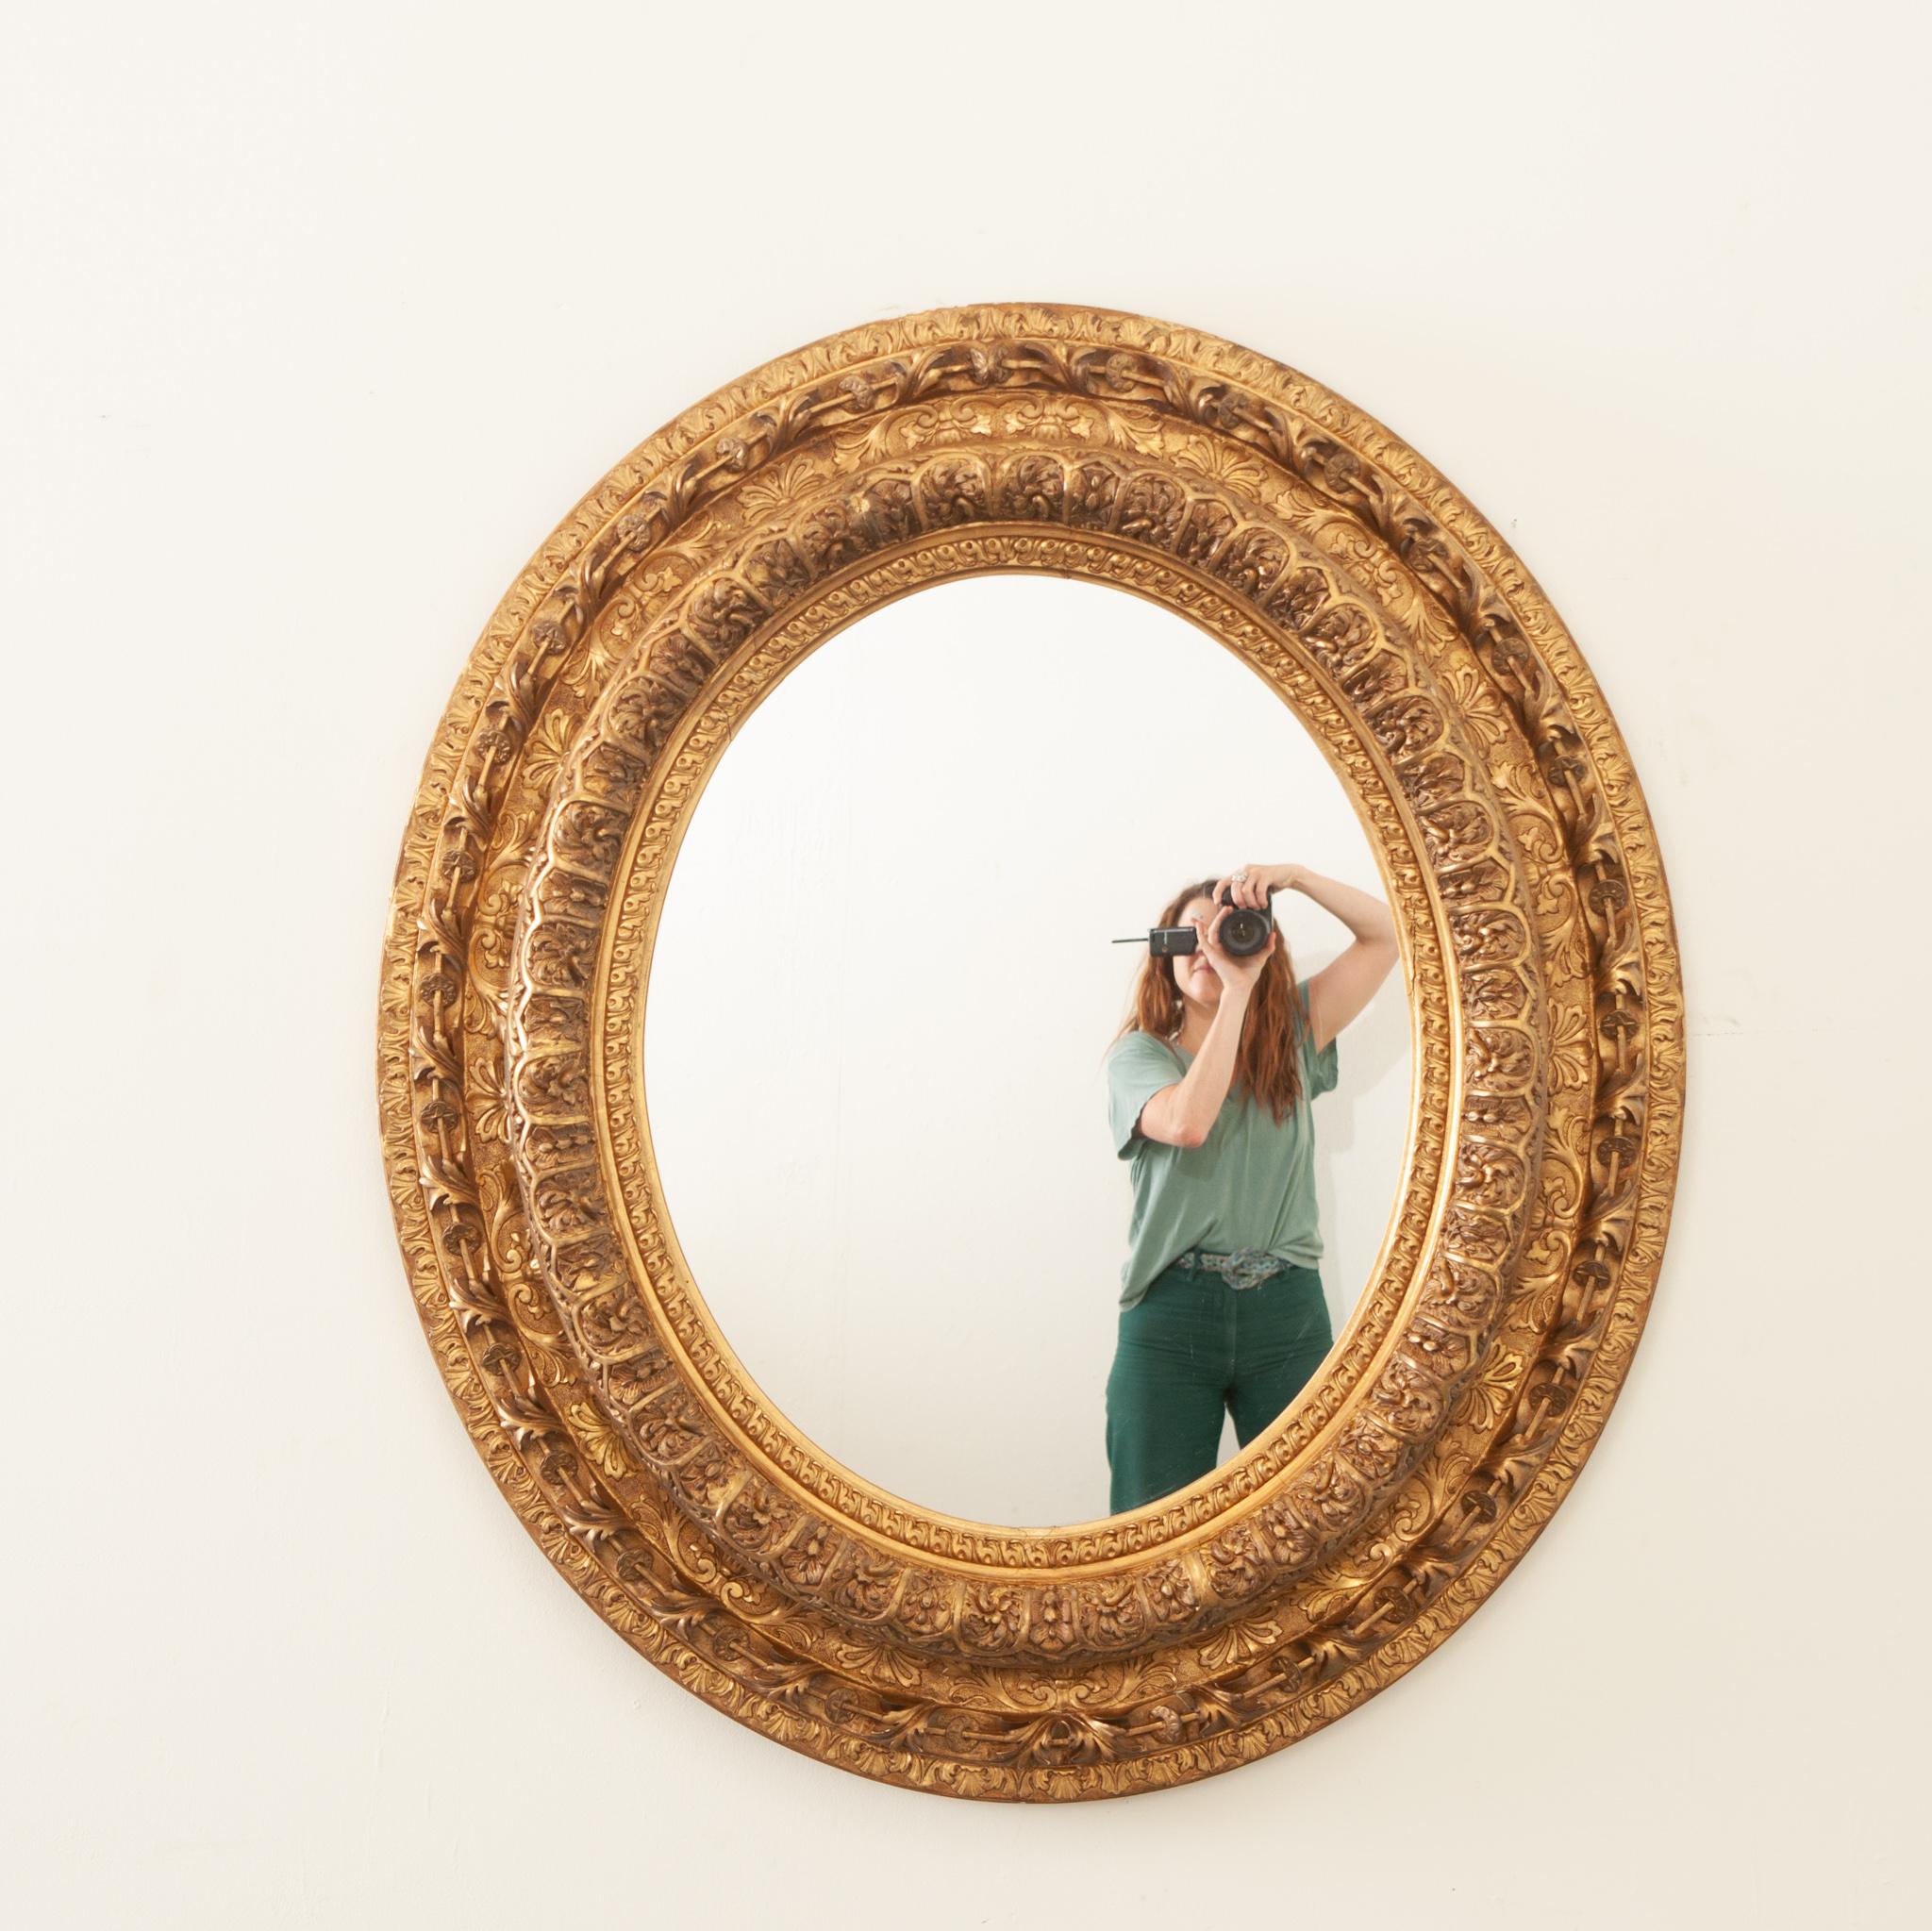 Somptueux miroir ovale en bois doré de style Napoléon III du 19ème siècle. Cet étonnant miroir, fabriqué à la main en France sous le règne de Napoléon III, présente un cadre ovale très décoratif qui est vraiment éblouissant. Richement orné de motifs